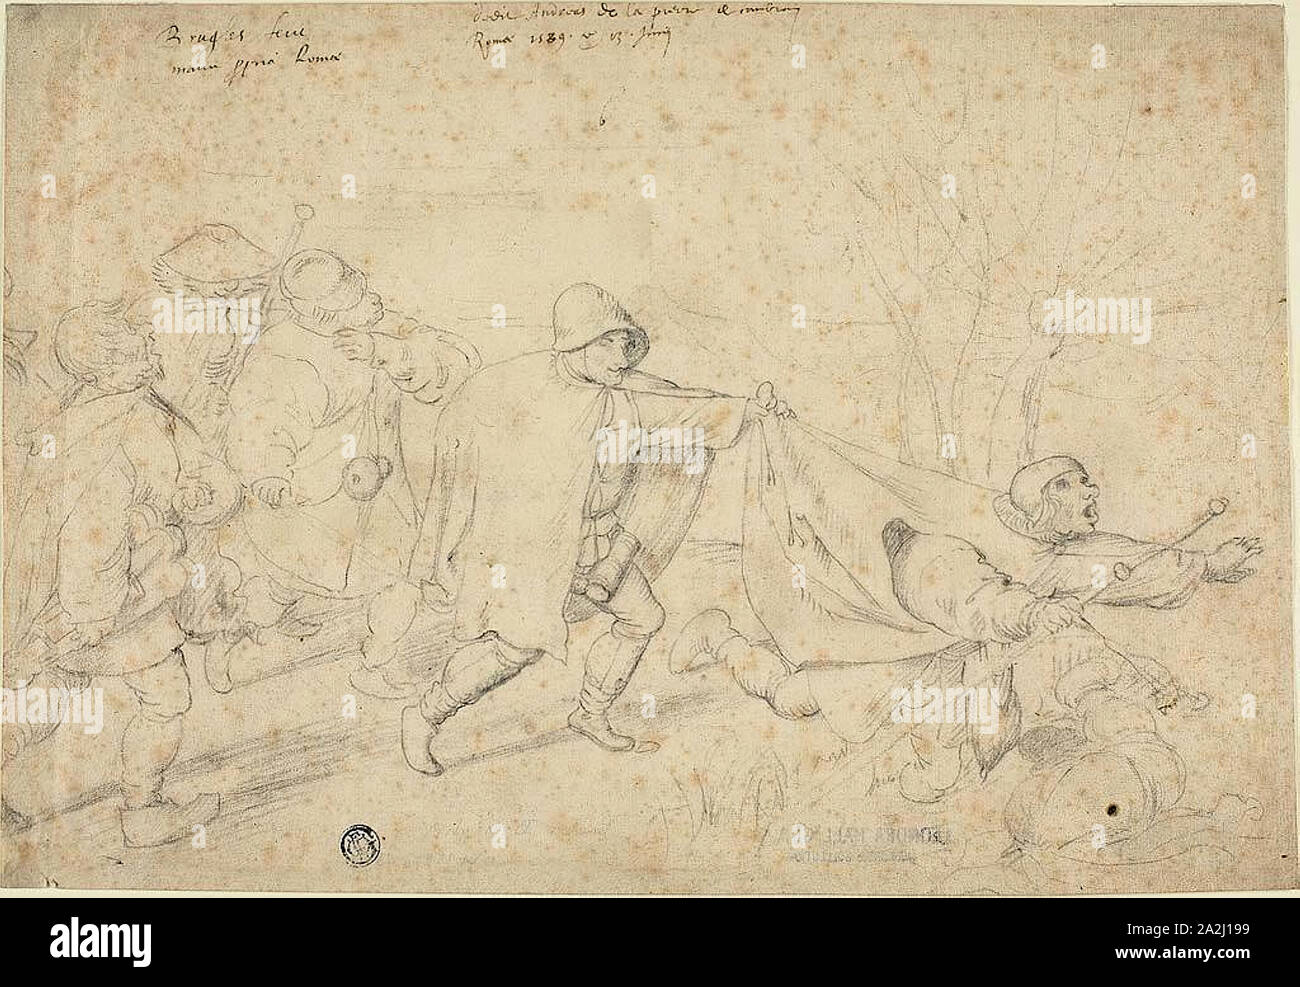 La parabole de l'Aveugle, 1589, Andreas de la Prieur de Cambray (flamande, 1567-1599), après Pieter Bruegel, l'ancien (flamand/Russisch, 1525/30-1569), ou après Marten van Cleve, l'ancien (1527-1581), Russisch, Pays-Bas, craie noire sur papier vergé chamois, 218 x 318 mm Banque D'Images